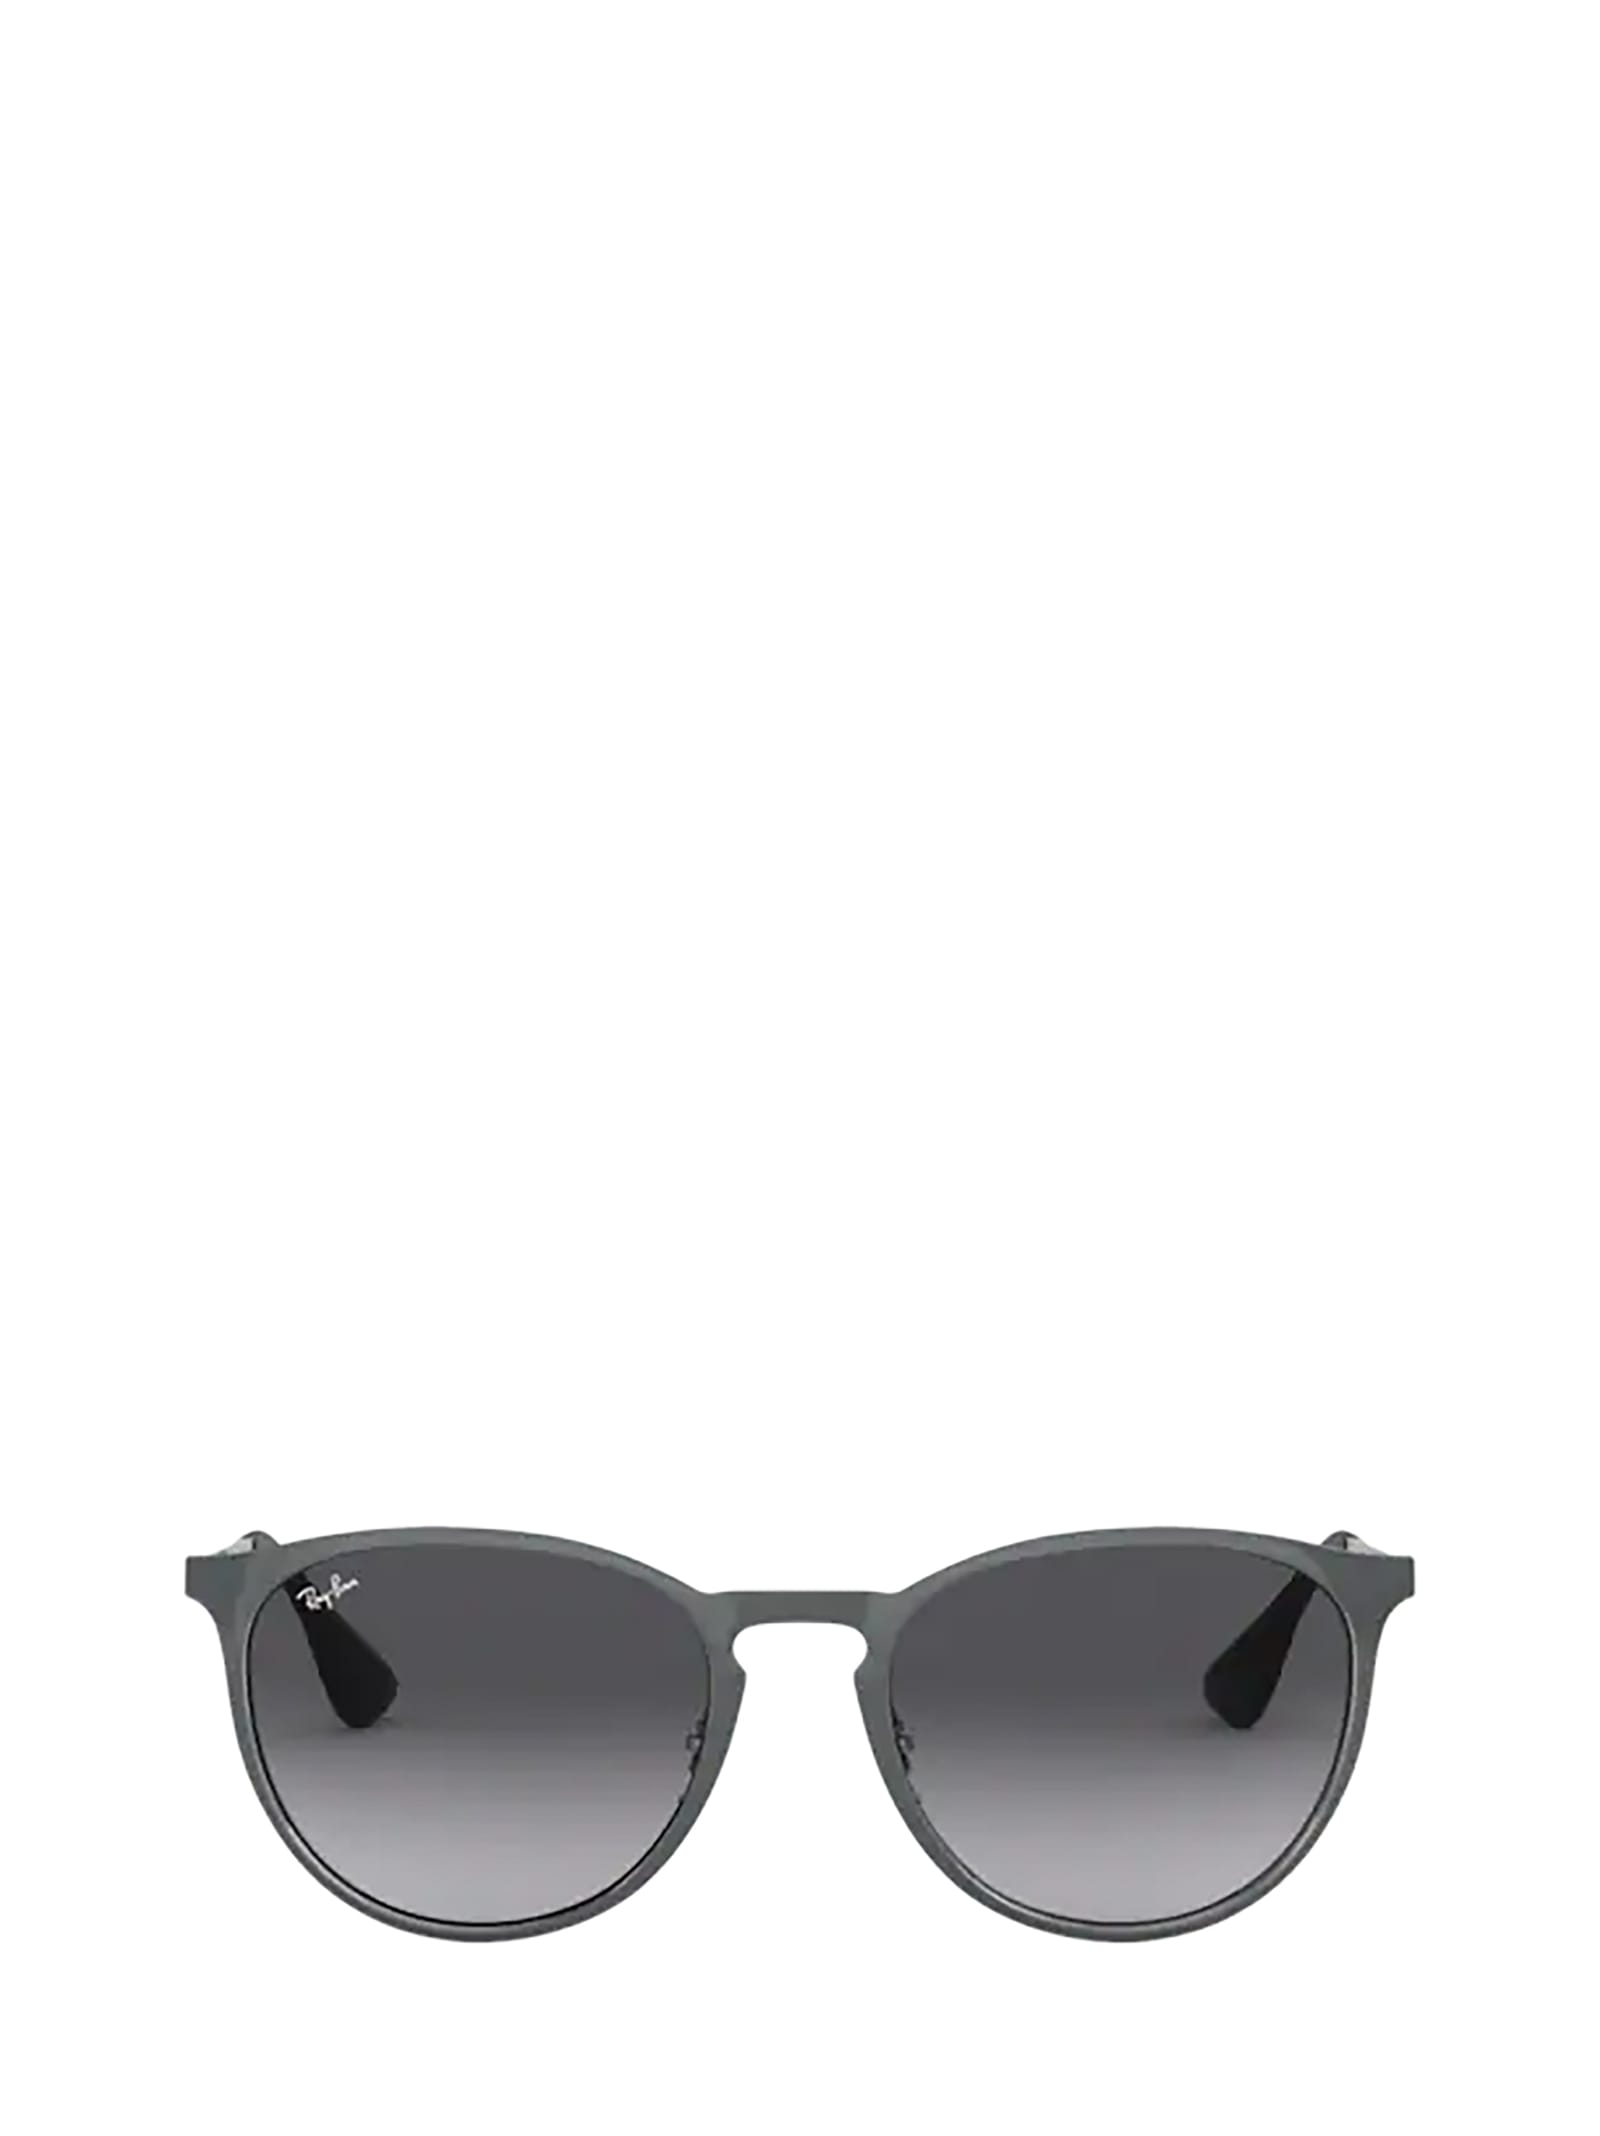 Ray-Ban Ray-ban Rb3539 Metallic Grey Sunglasses